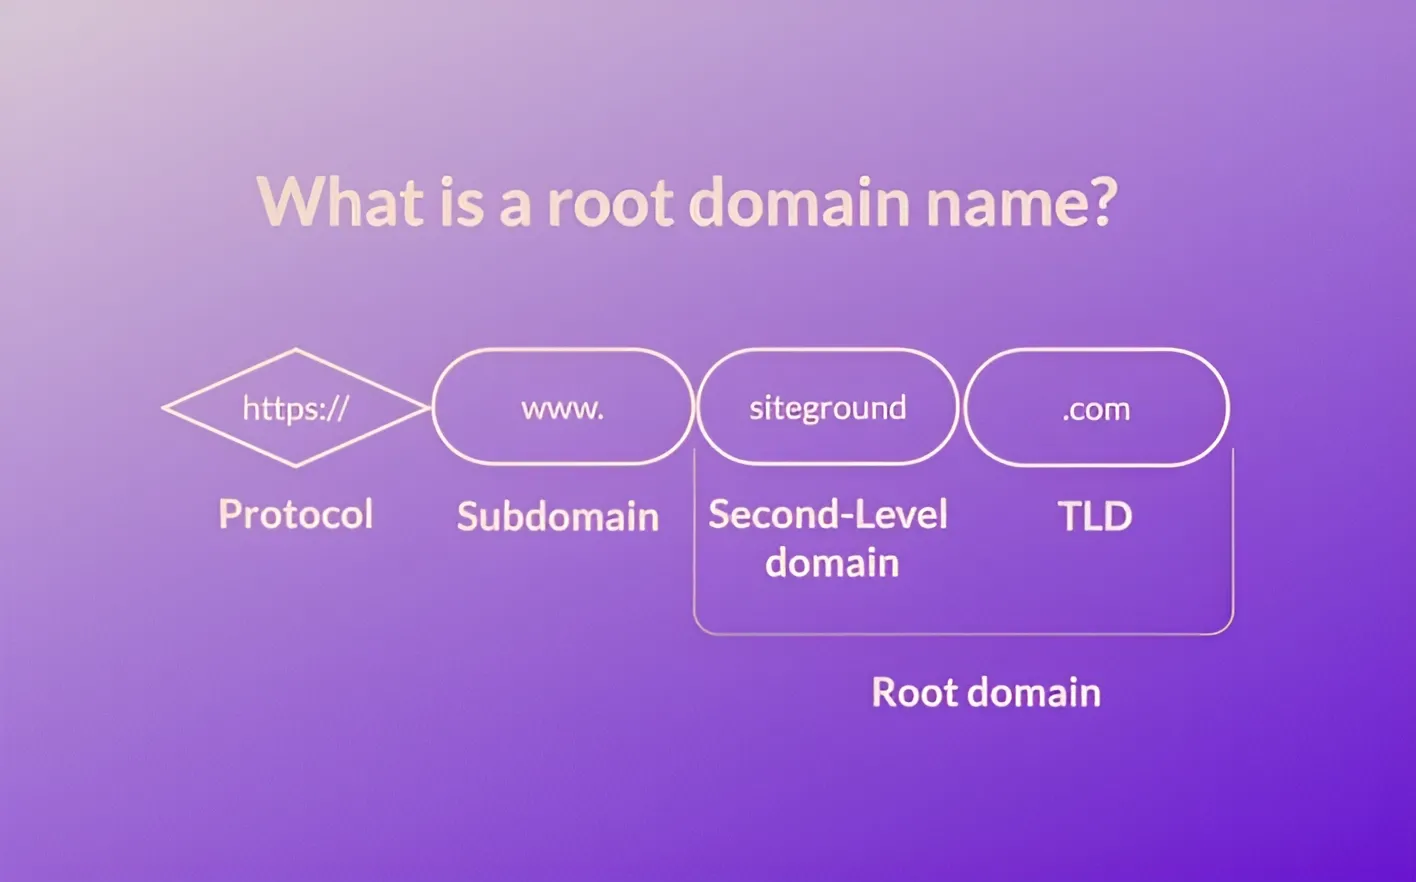 Root domain là tên miền gốc, cấp cao nhất trong hệ thống tên miền và thường gọi tắt là tên miền cấp 0